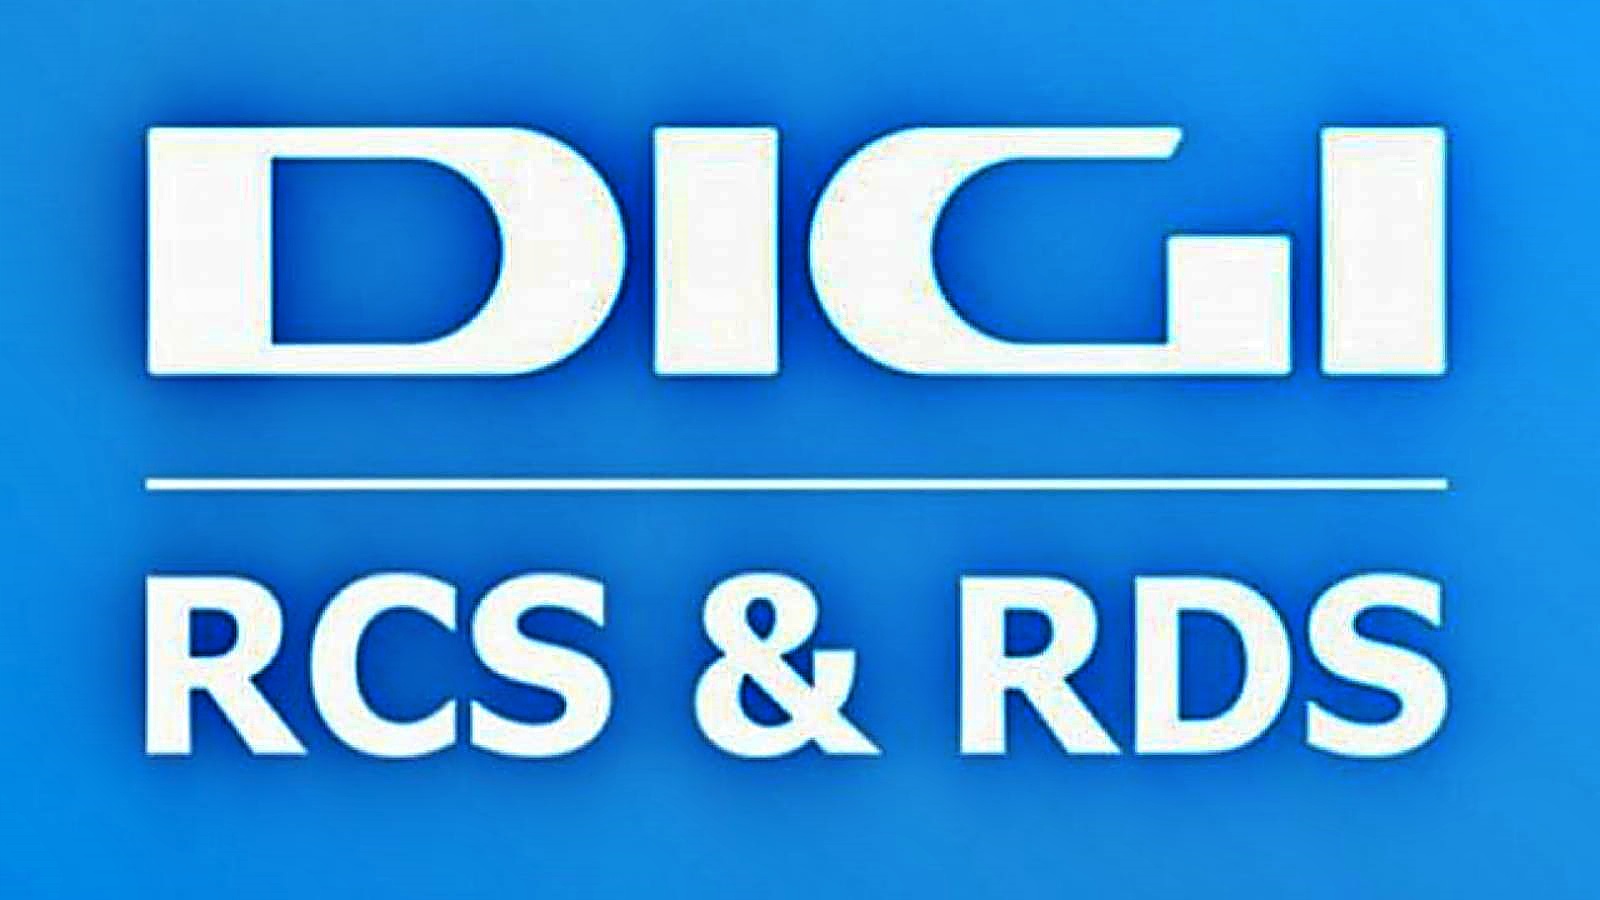 DIGI RCS i RDS mierzą miliony klientów w całej Rumunii